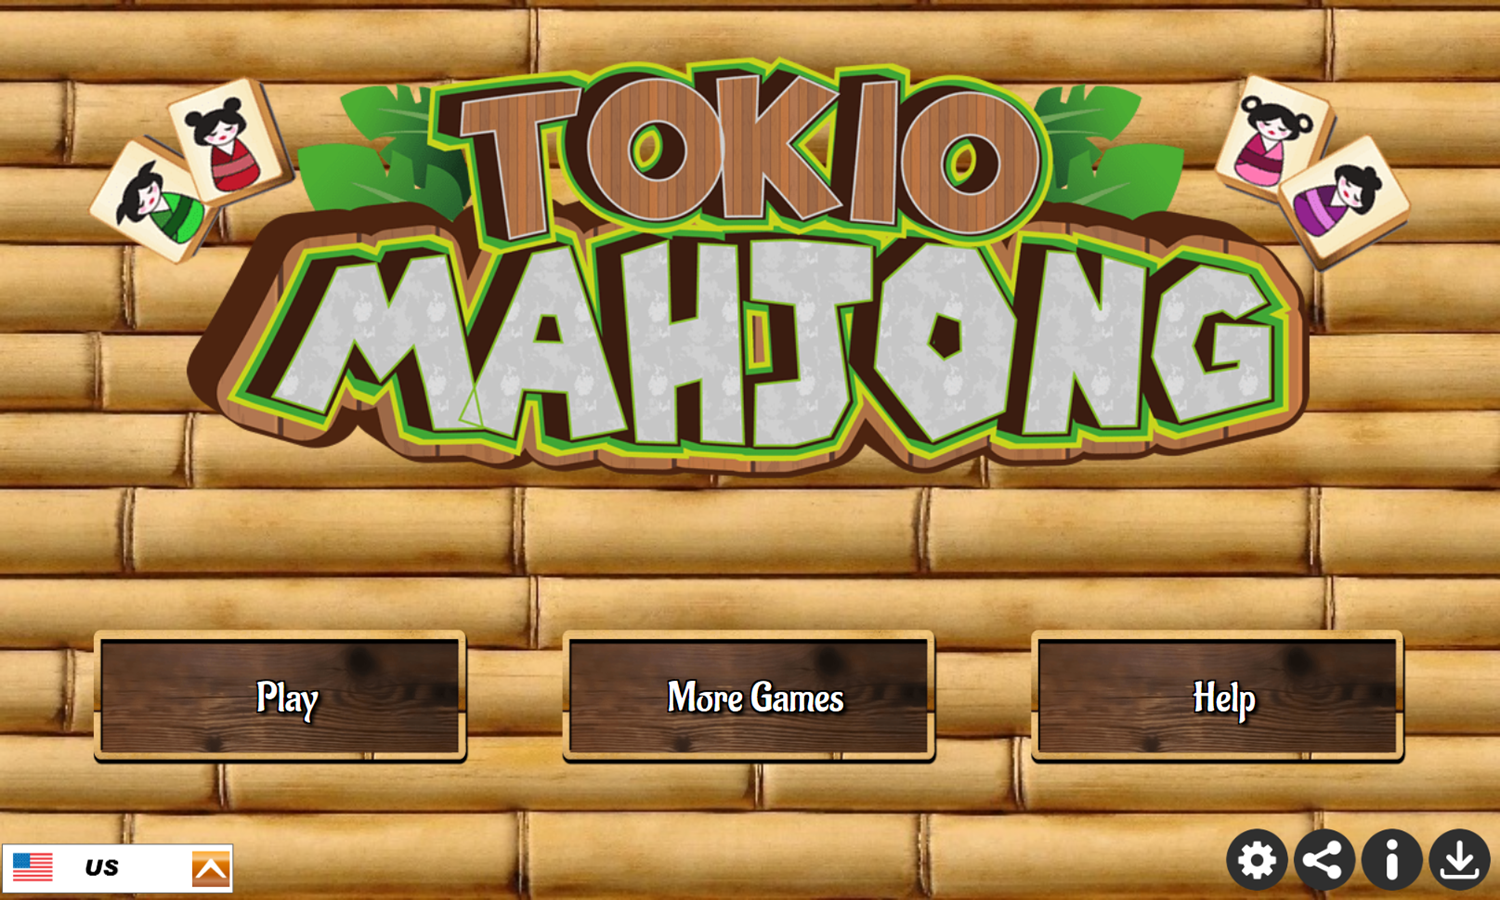 Tokio Mahjong Game Welcome Screen Screenshot.